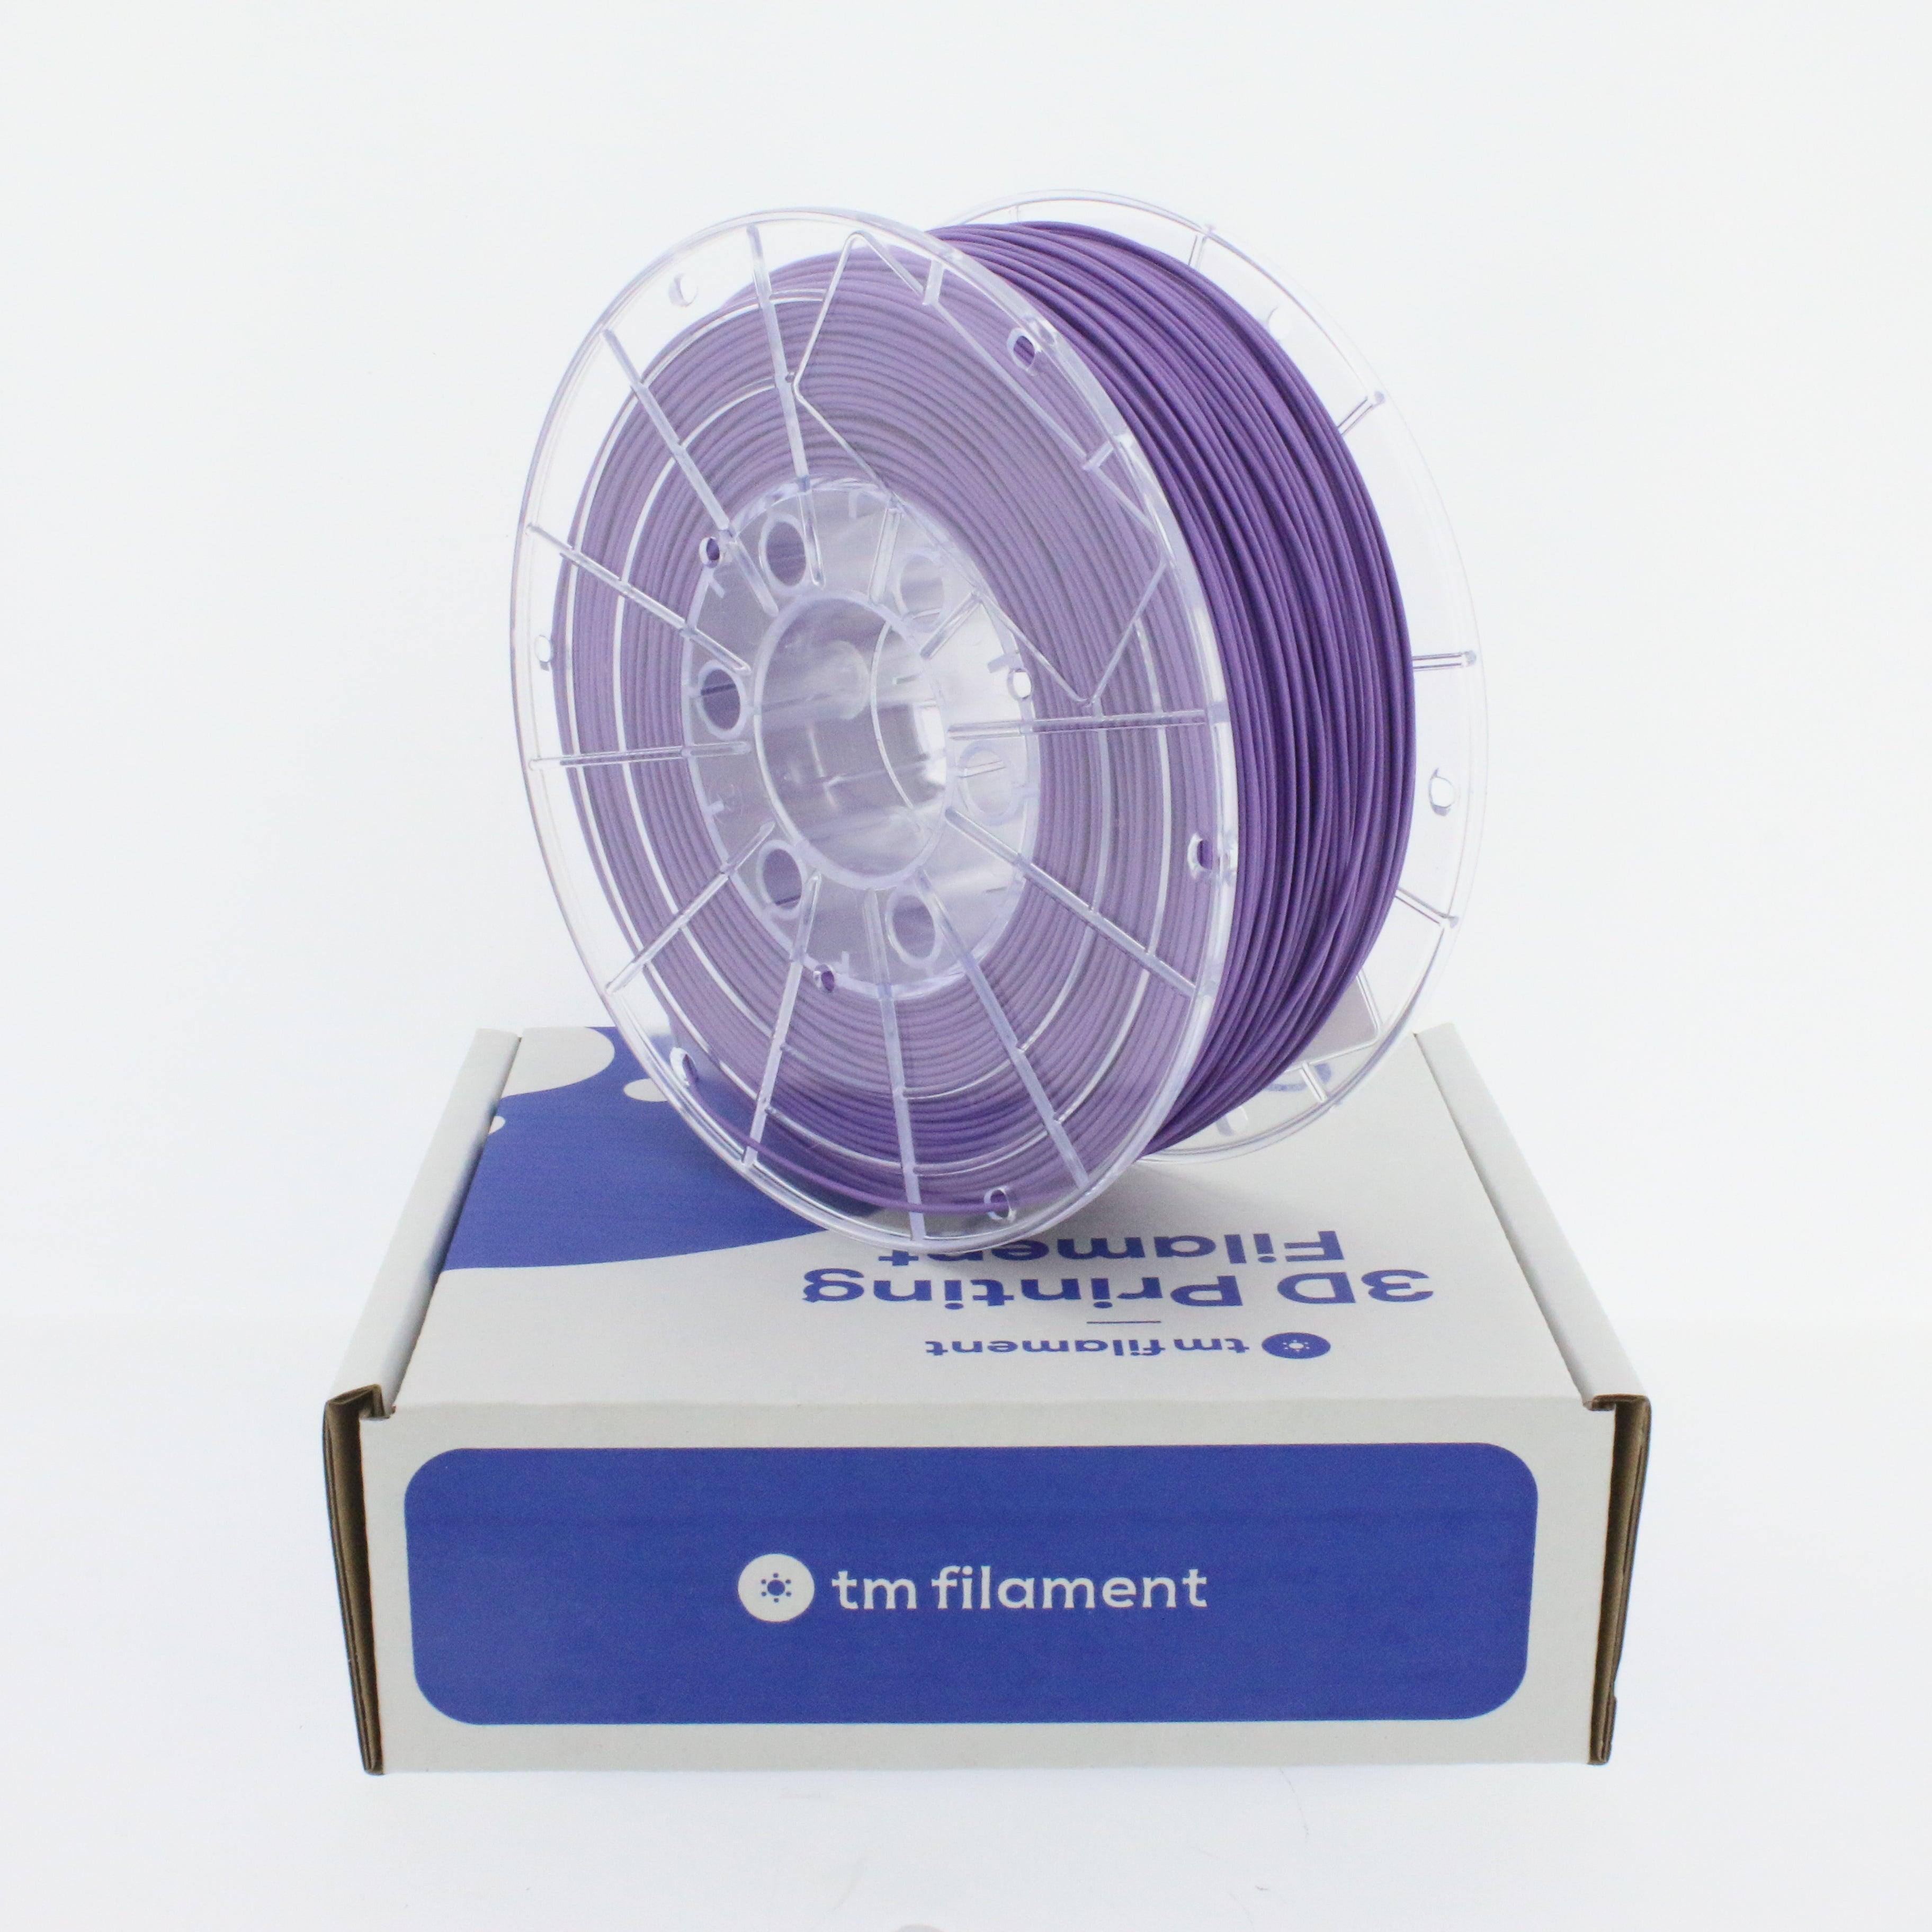 PLA filament (Polylactic Acid) - Tm3dFilament